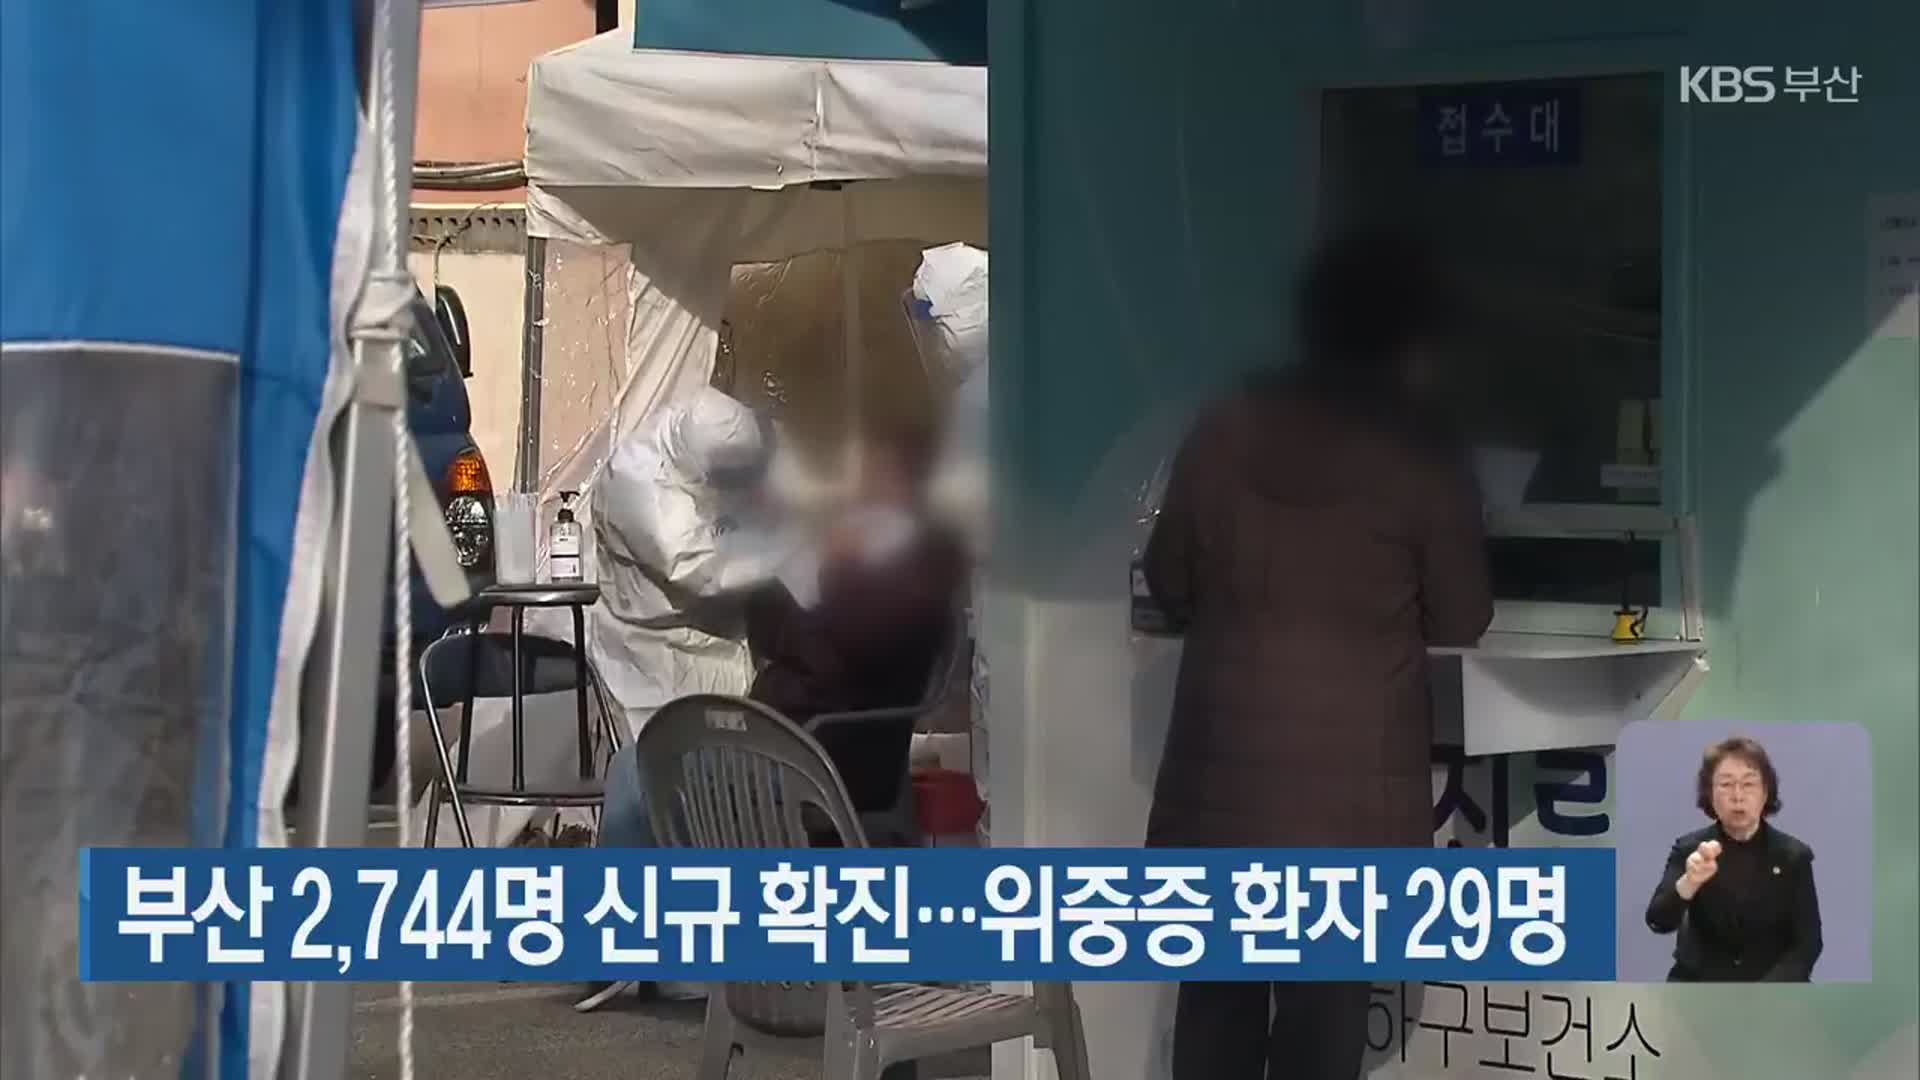 부산 2,744명 신규 확진…위중증 환자 29명